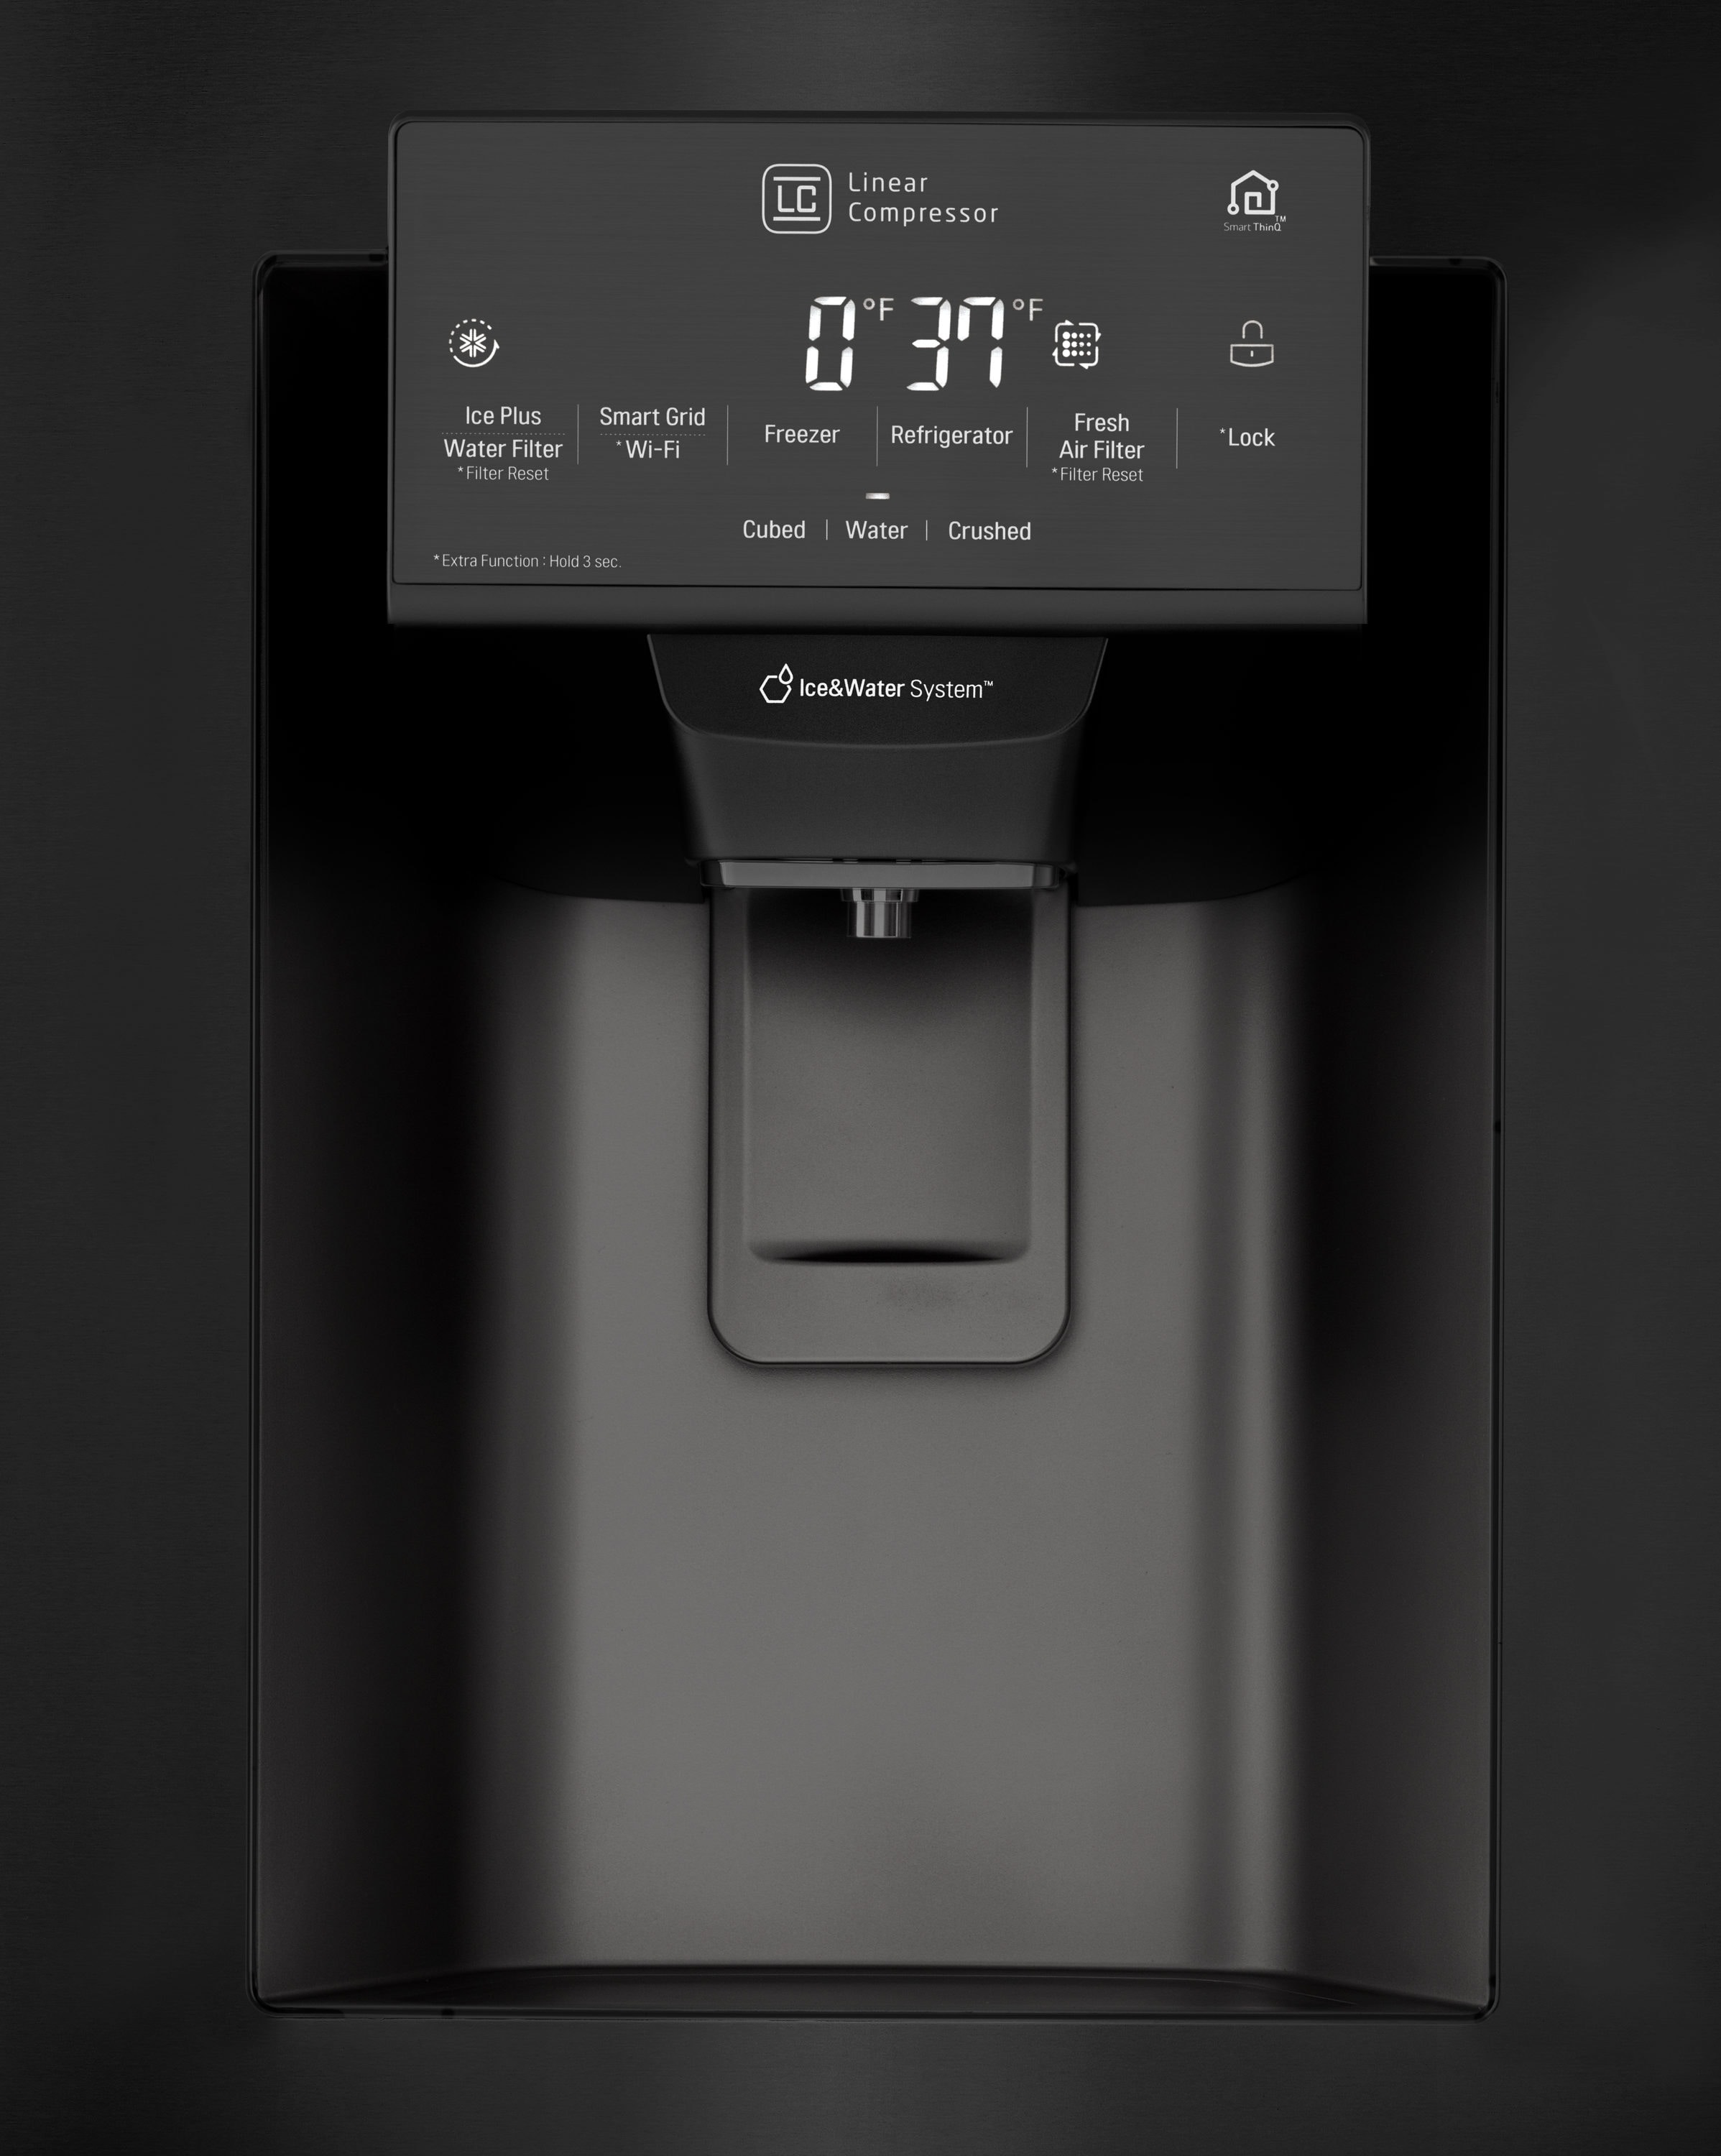 LG LFXS28566M review: Door-in-Door smart fridge disappoints - CNET